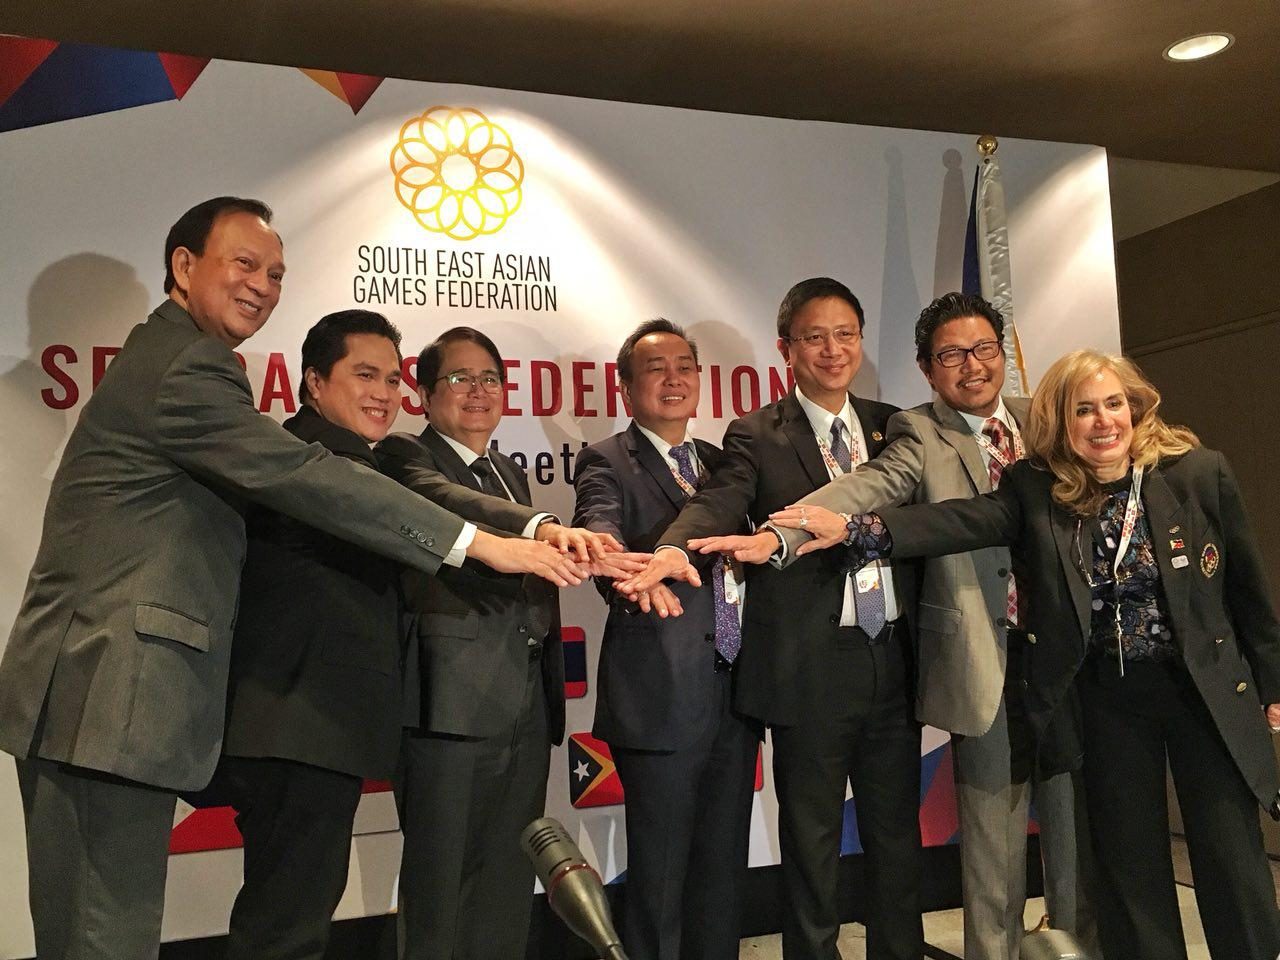 PH’s 2019 SEA Games hosting may snowball to Asian Games bid